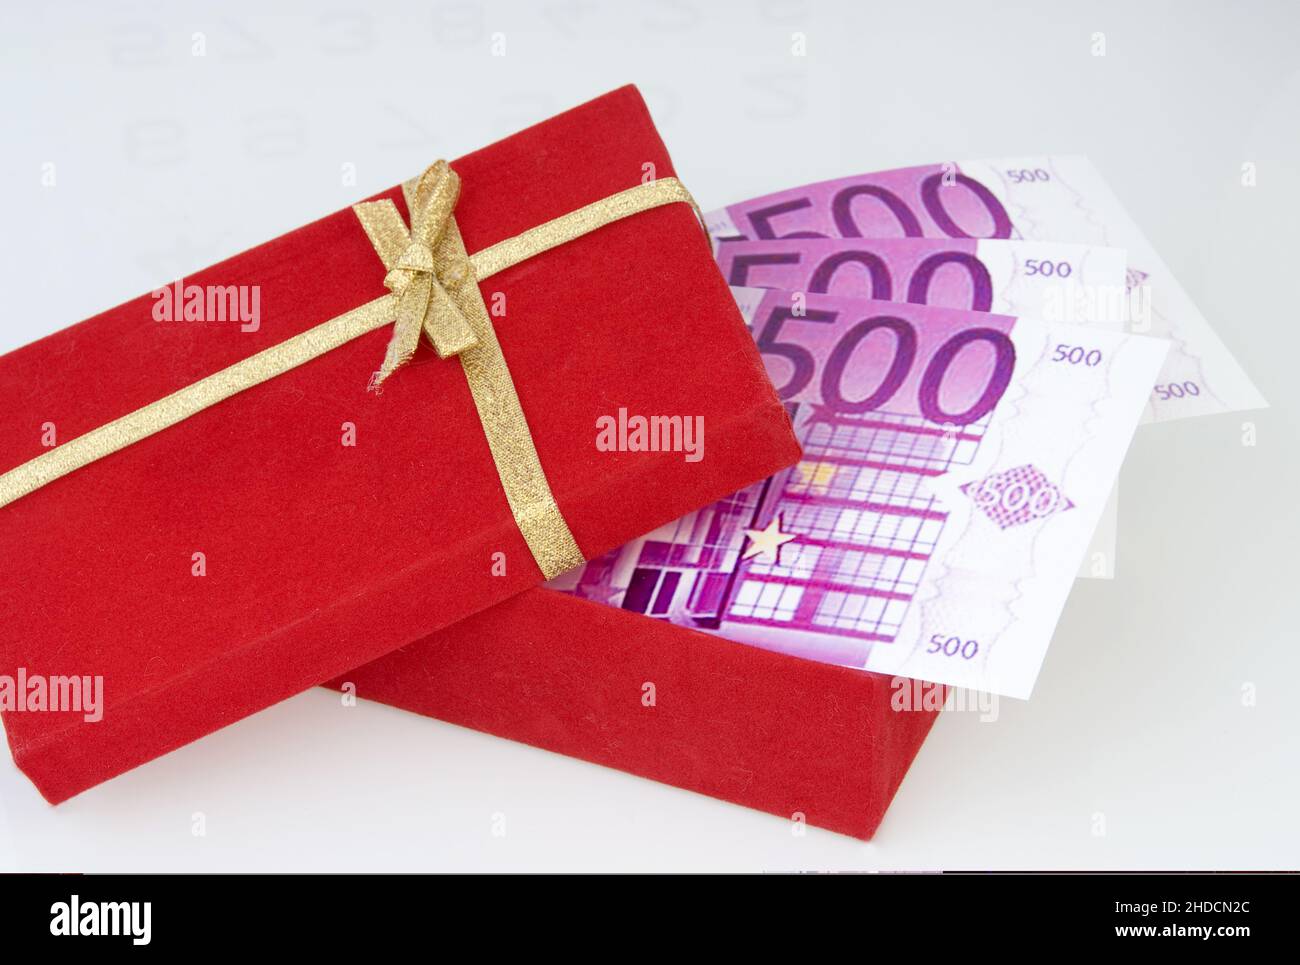 Symbolbild, Geldgeschenk, Geschenk, Geschenkkarton, goldene Schleife, 500er Euro Banknoten, Stock Photo